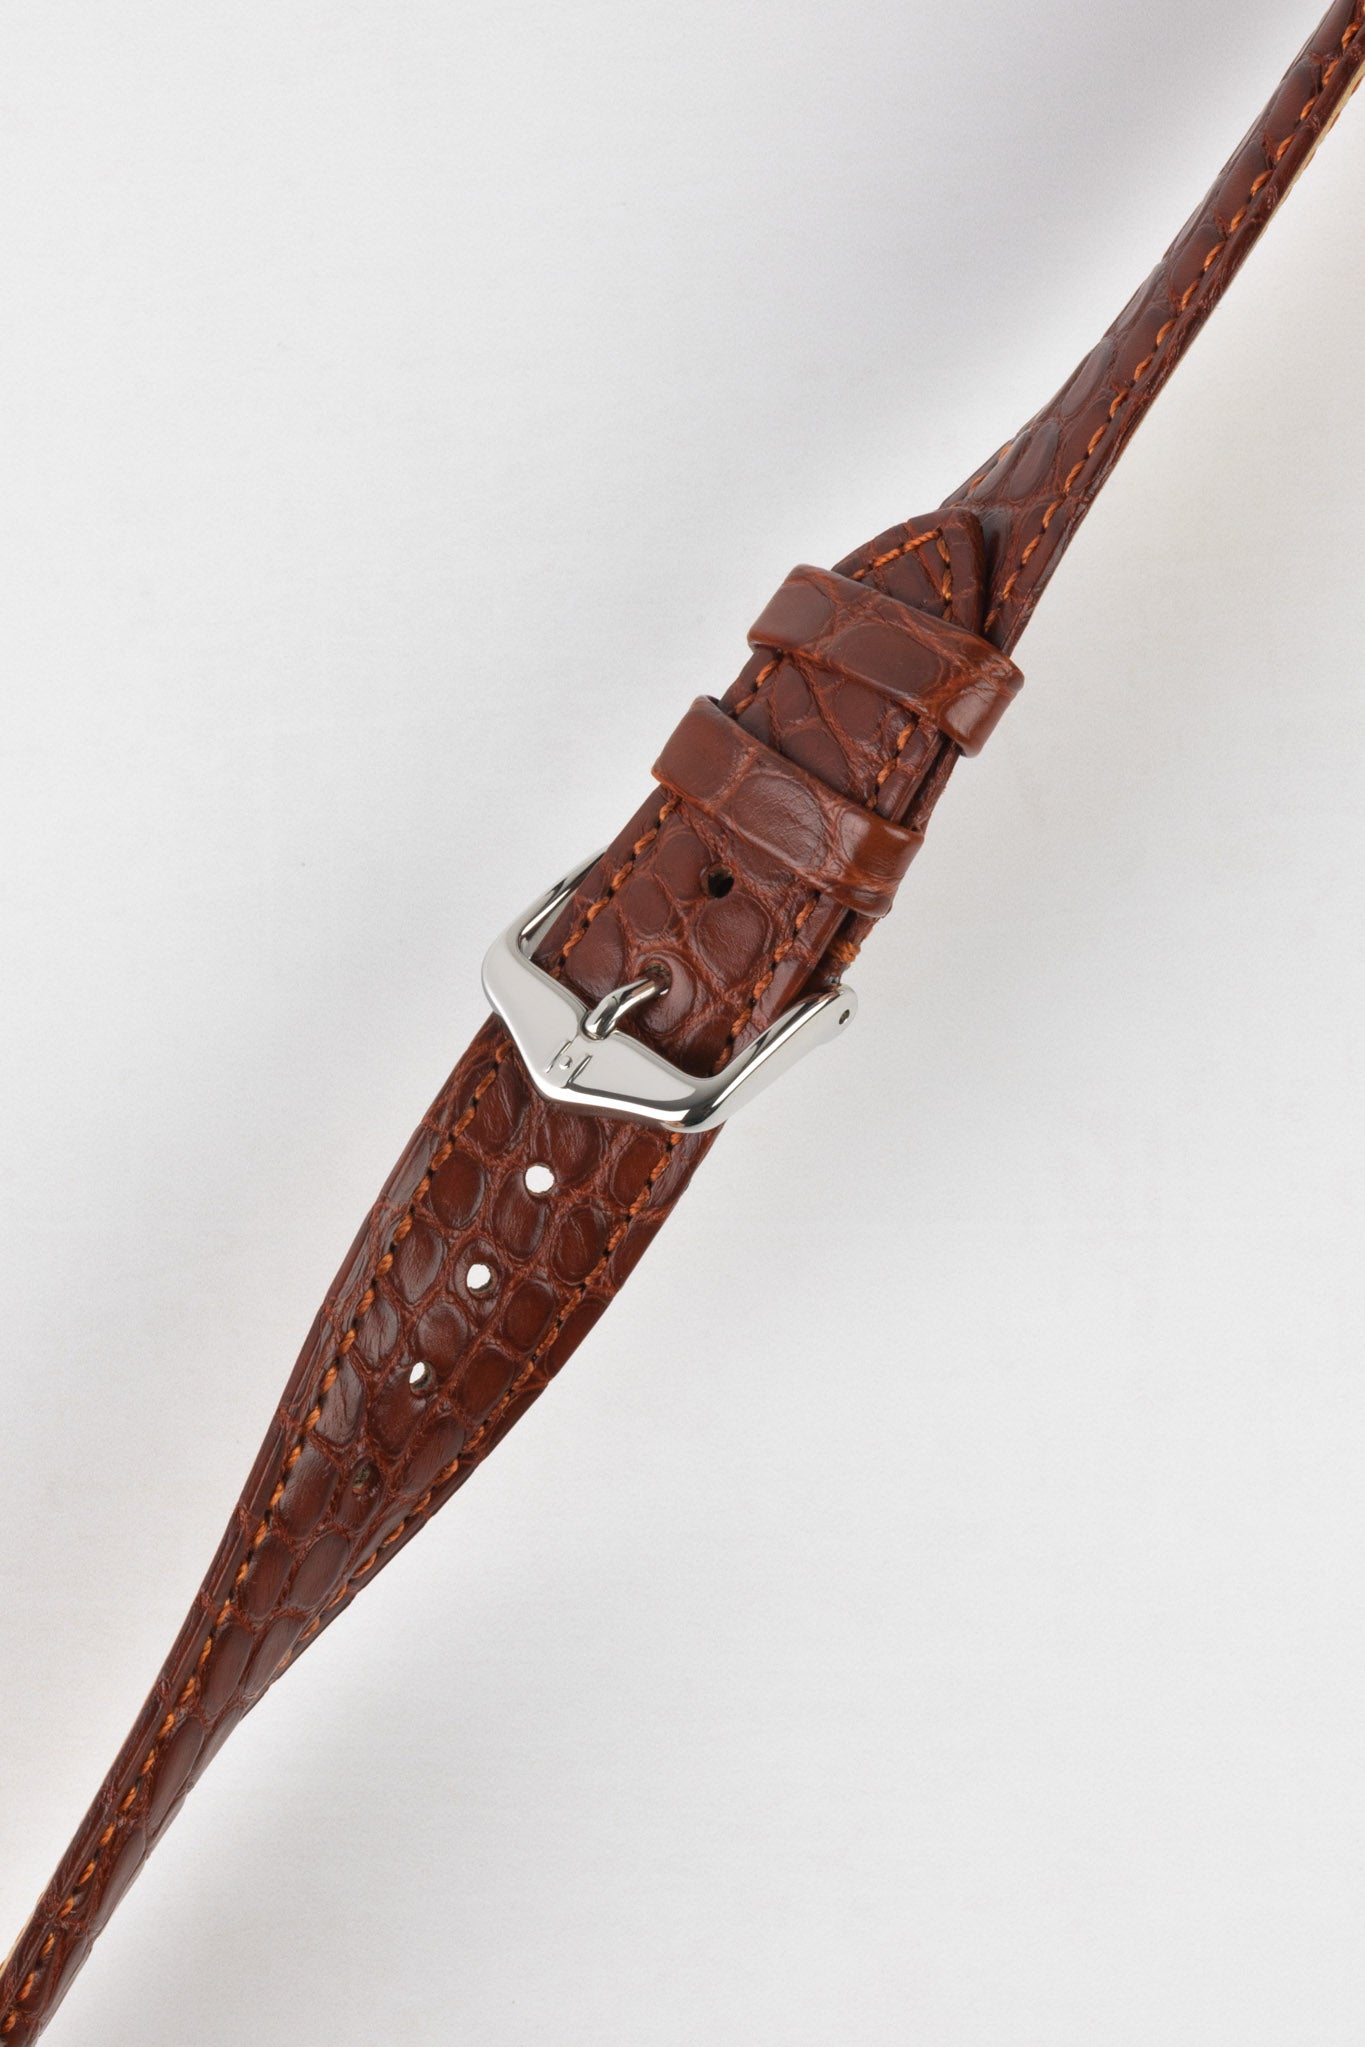 Hirsch REGENT Genuine Alligator Leather Watch Strap in GOLD BROWN